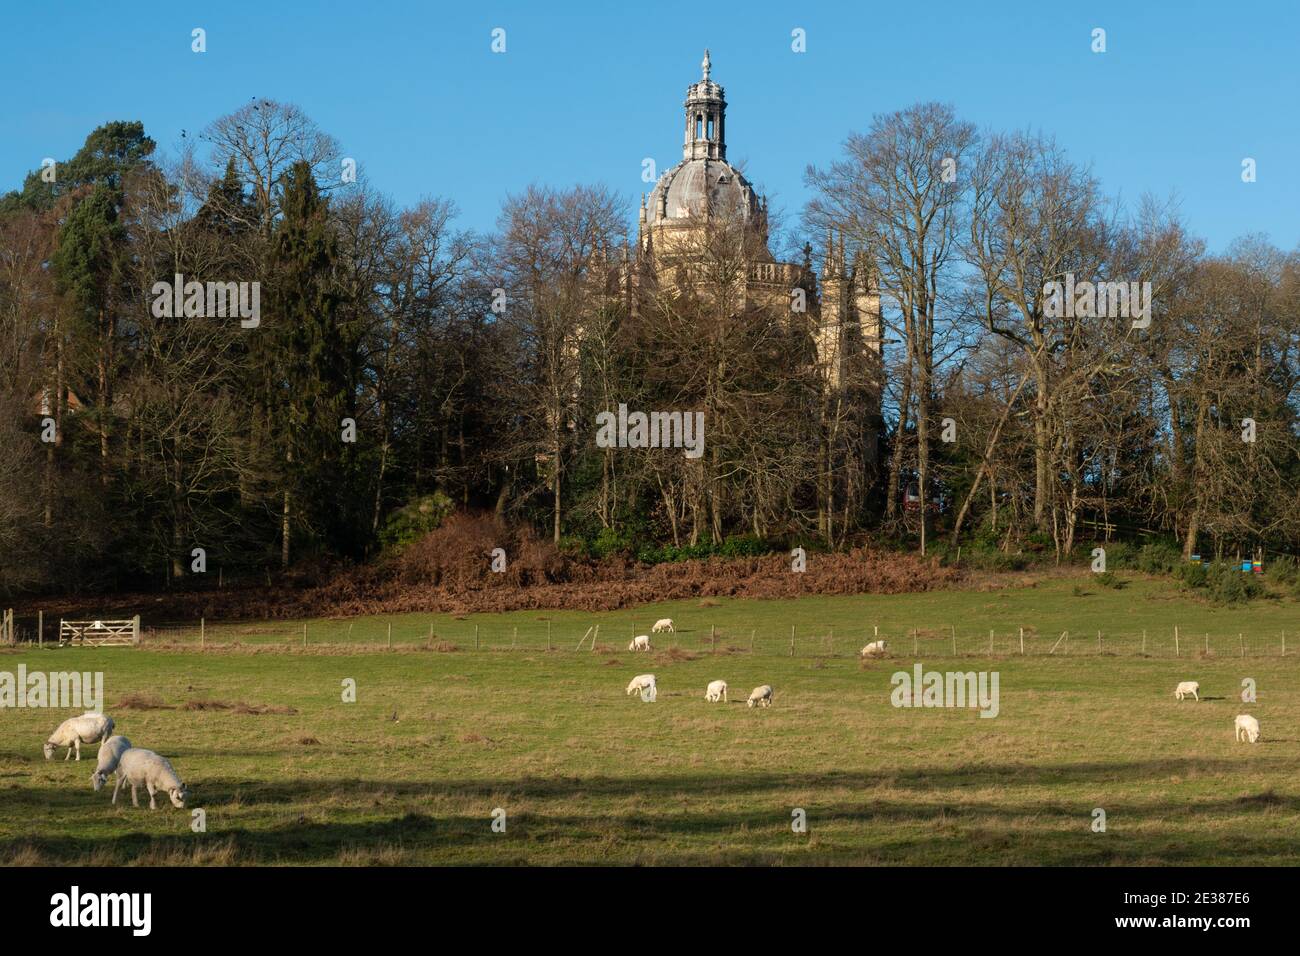 L'église de l'abbaye Saint-Michel, un monastère bénédictin de Farnborough, Hampshire, Royaume-Uni, avec des moutons paître dans un champ au premier plan Banque D'Images